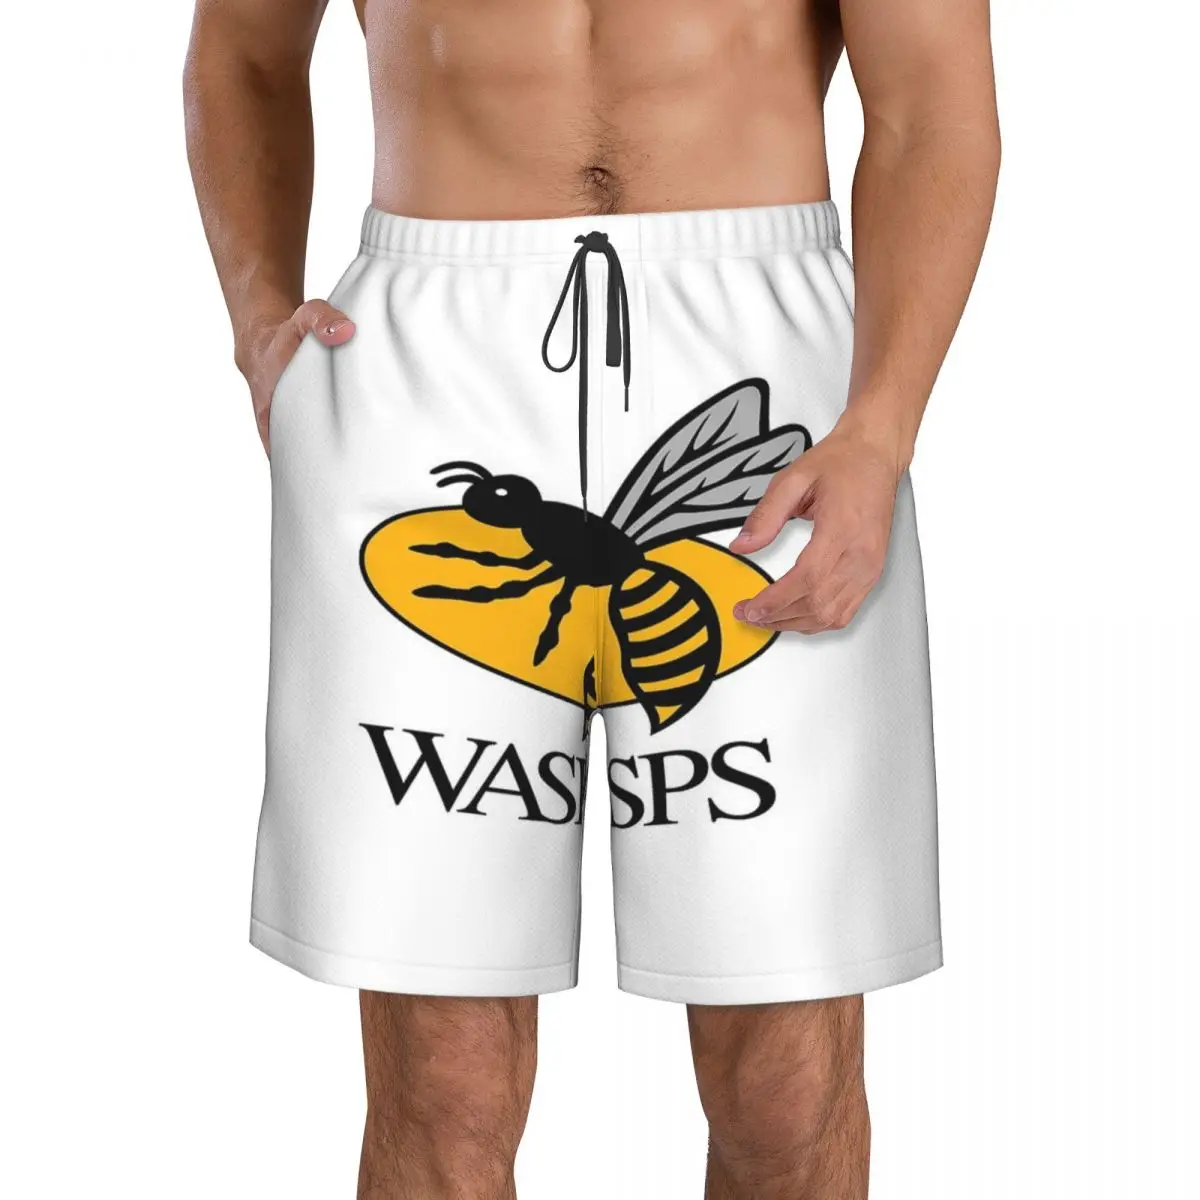 

Пляжные штаны Wasps, повседневные брюки, легкие, стрейчевые, для серфинга, ручная машинная стирка, Настраиваемые